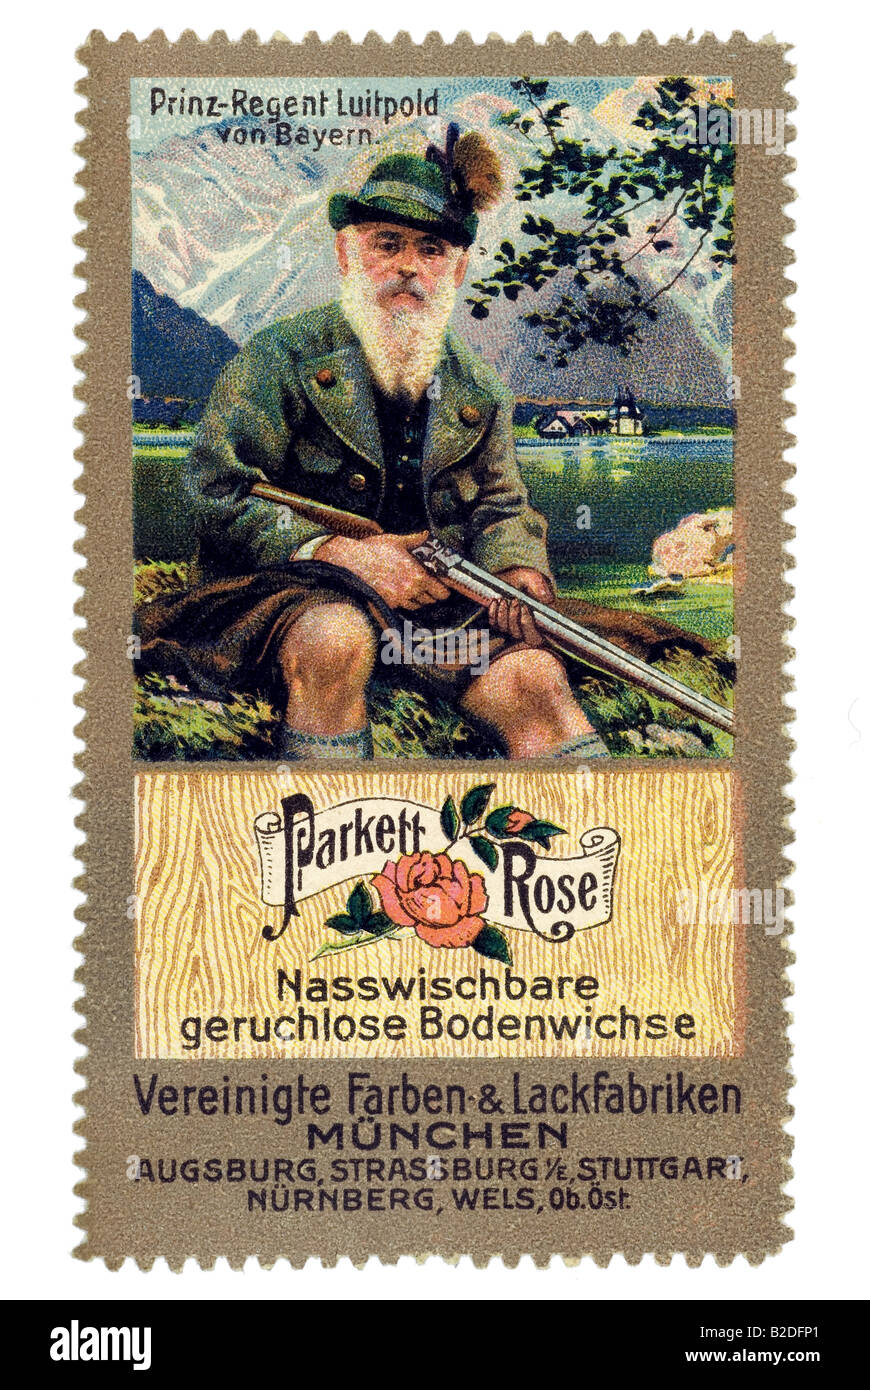 Trading stamp Parkett Rose Nasswischbare Bodenwichse geruchlose Prinz Regent Luipold von Bayern Vereinigte Farben Lackfabriken M Banque D'Images